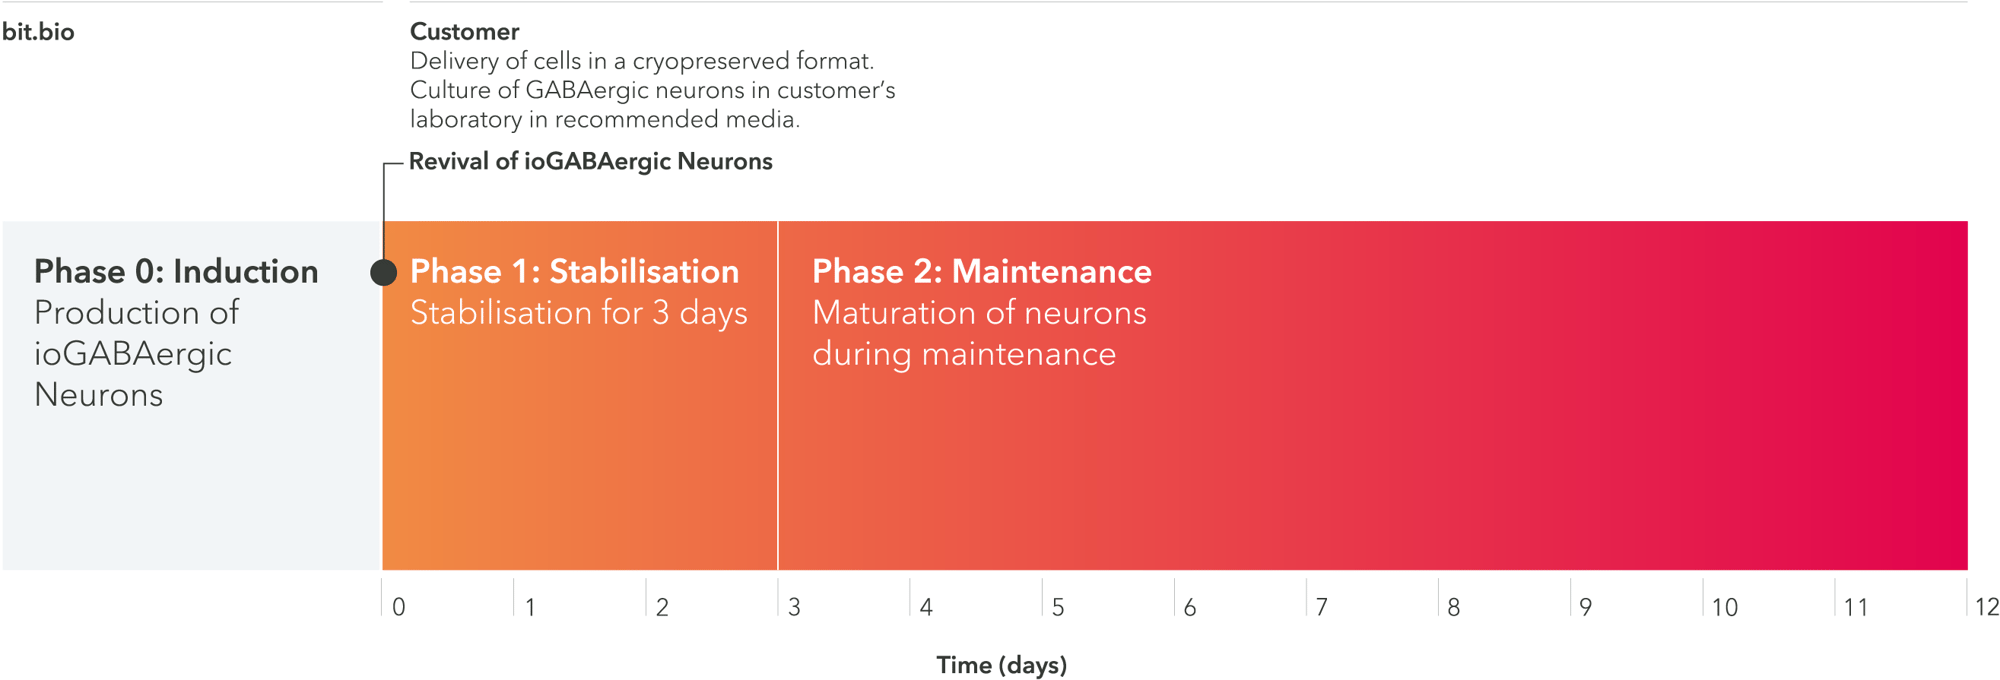 ioGABAergic neurons 12 day timeline